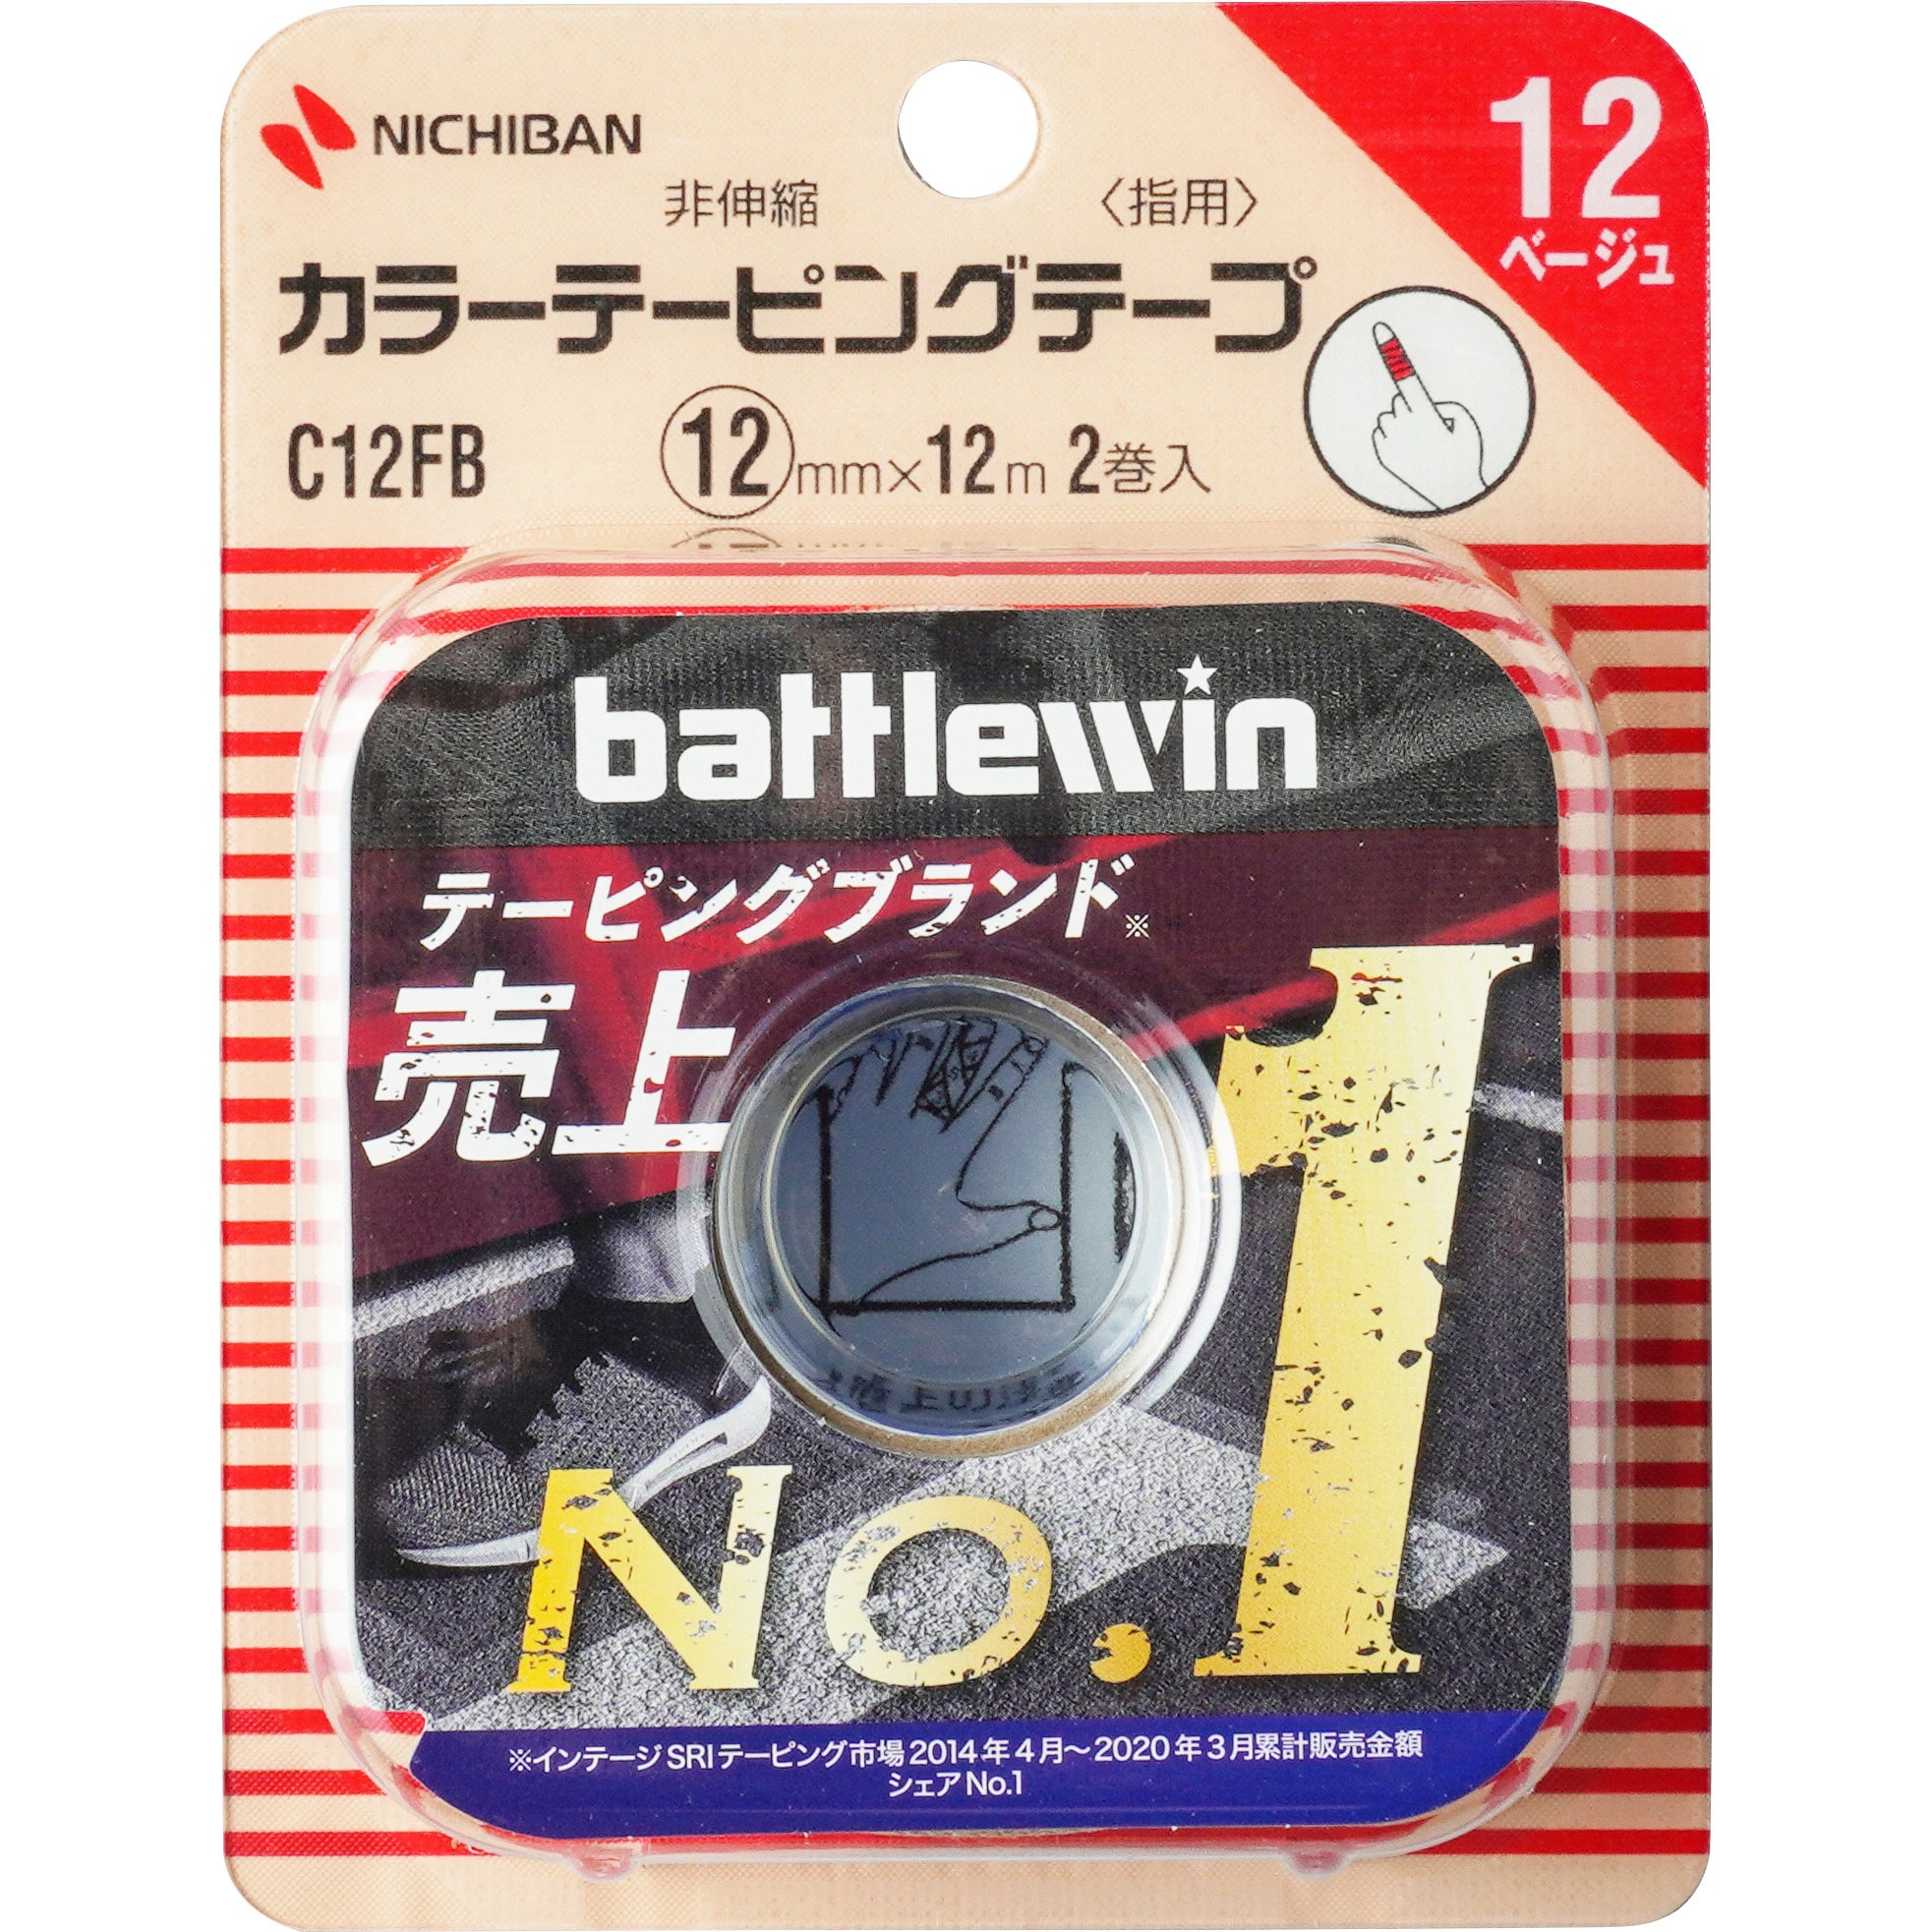 C12FB ニチバン カラーテーピング 1パック(2巻) ニチバン 【通販サイト